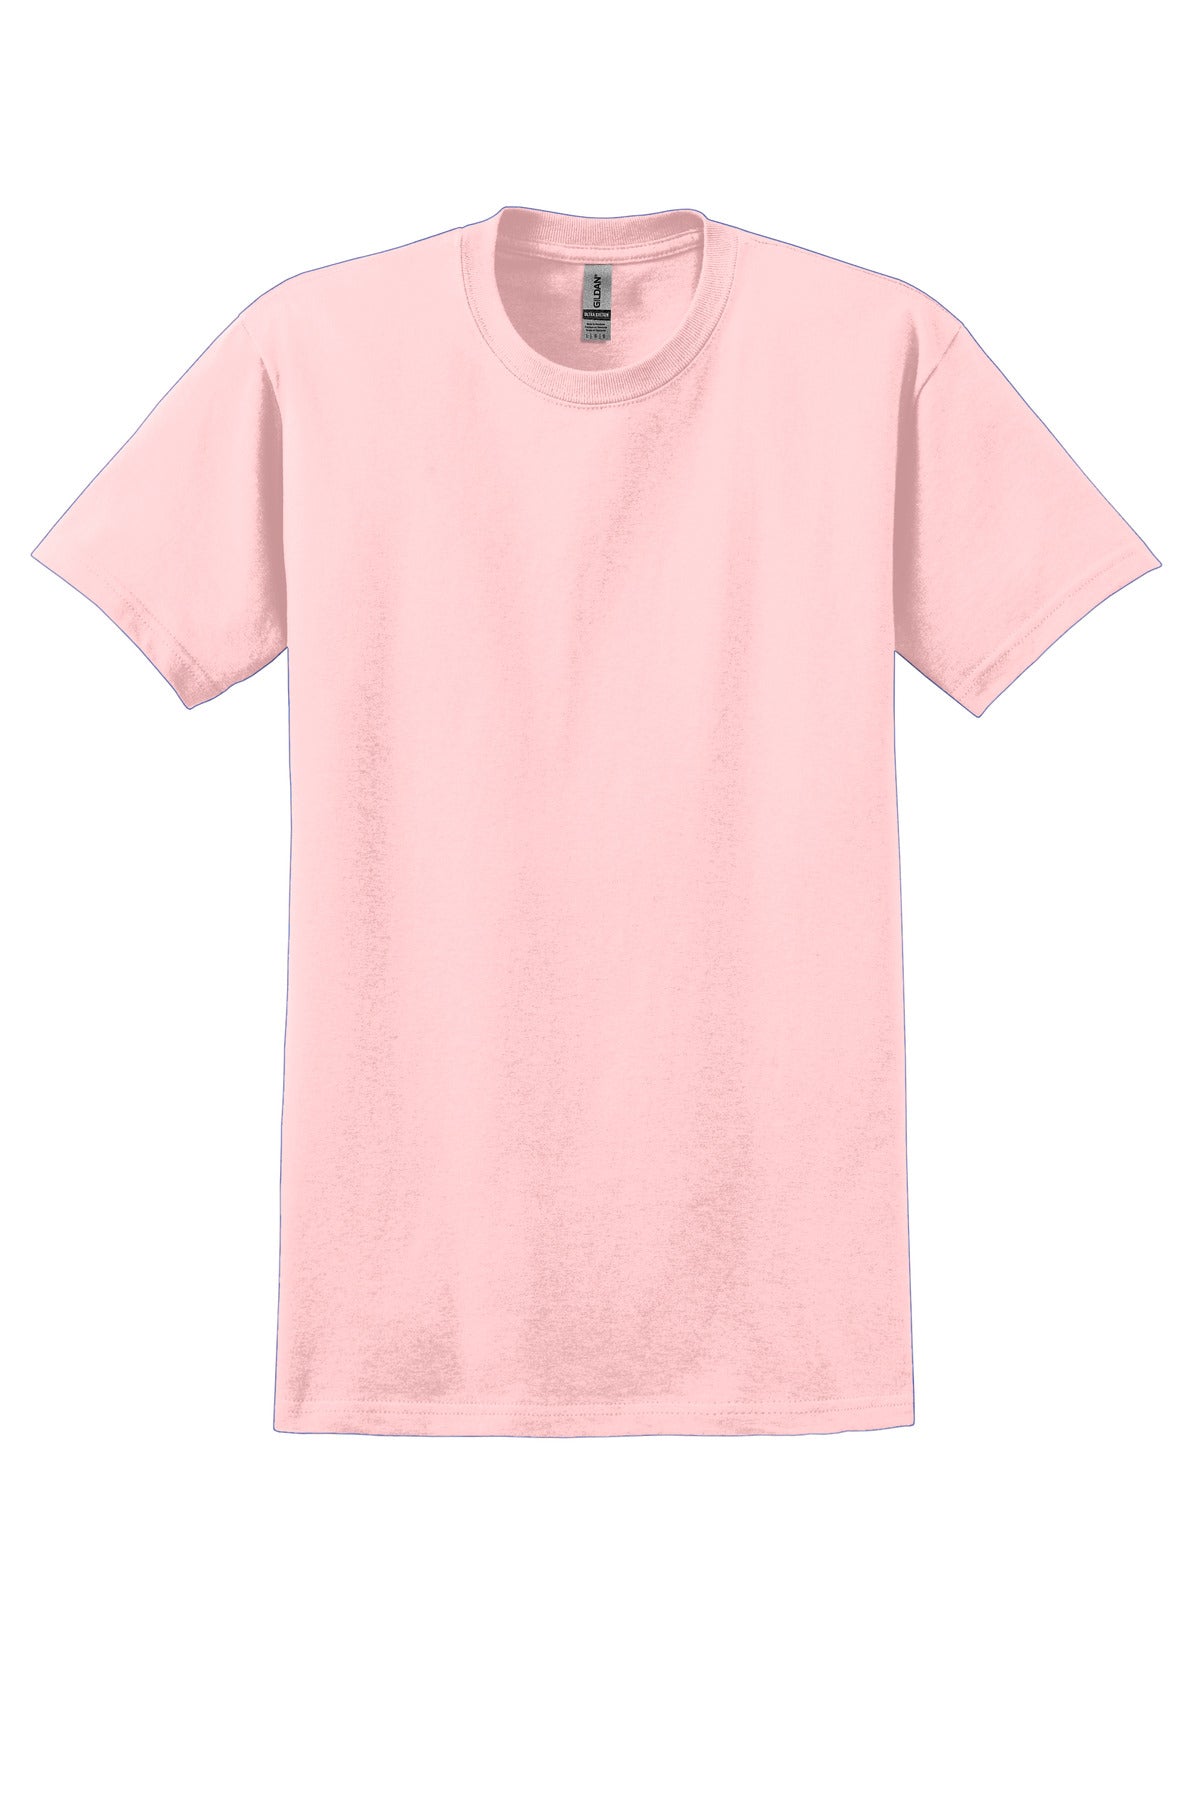 Gildan - Ultra Cotton 100% US Cotton T-Shirt. 2000 - Light Pink